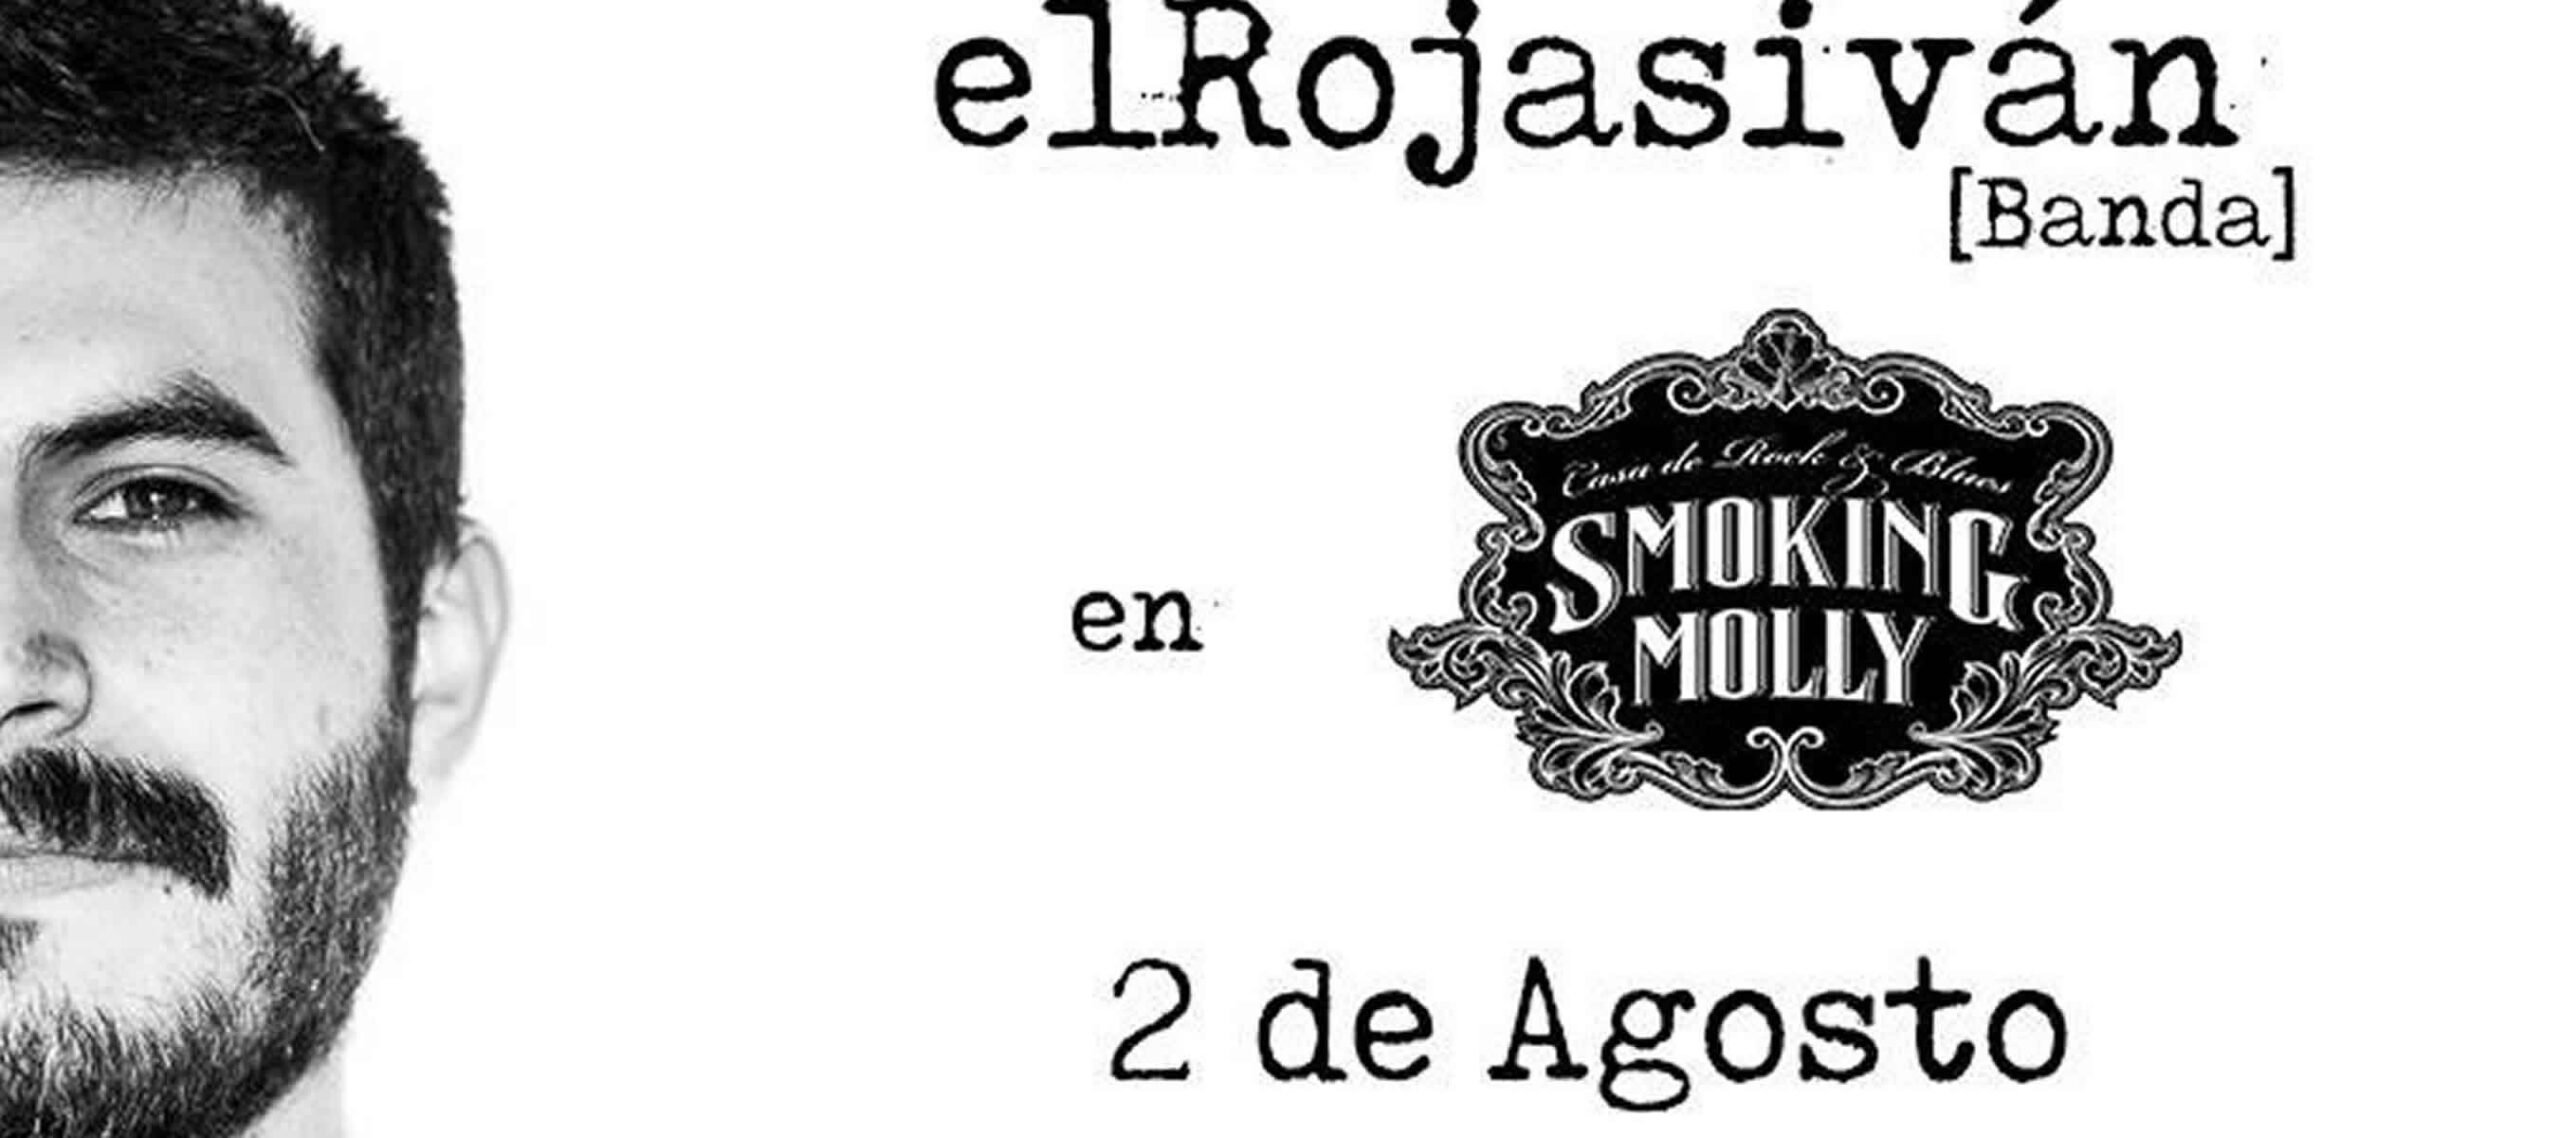 El Rojas Ivan en Smoking Molly